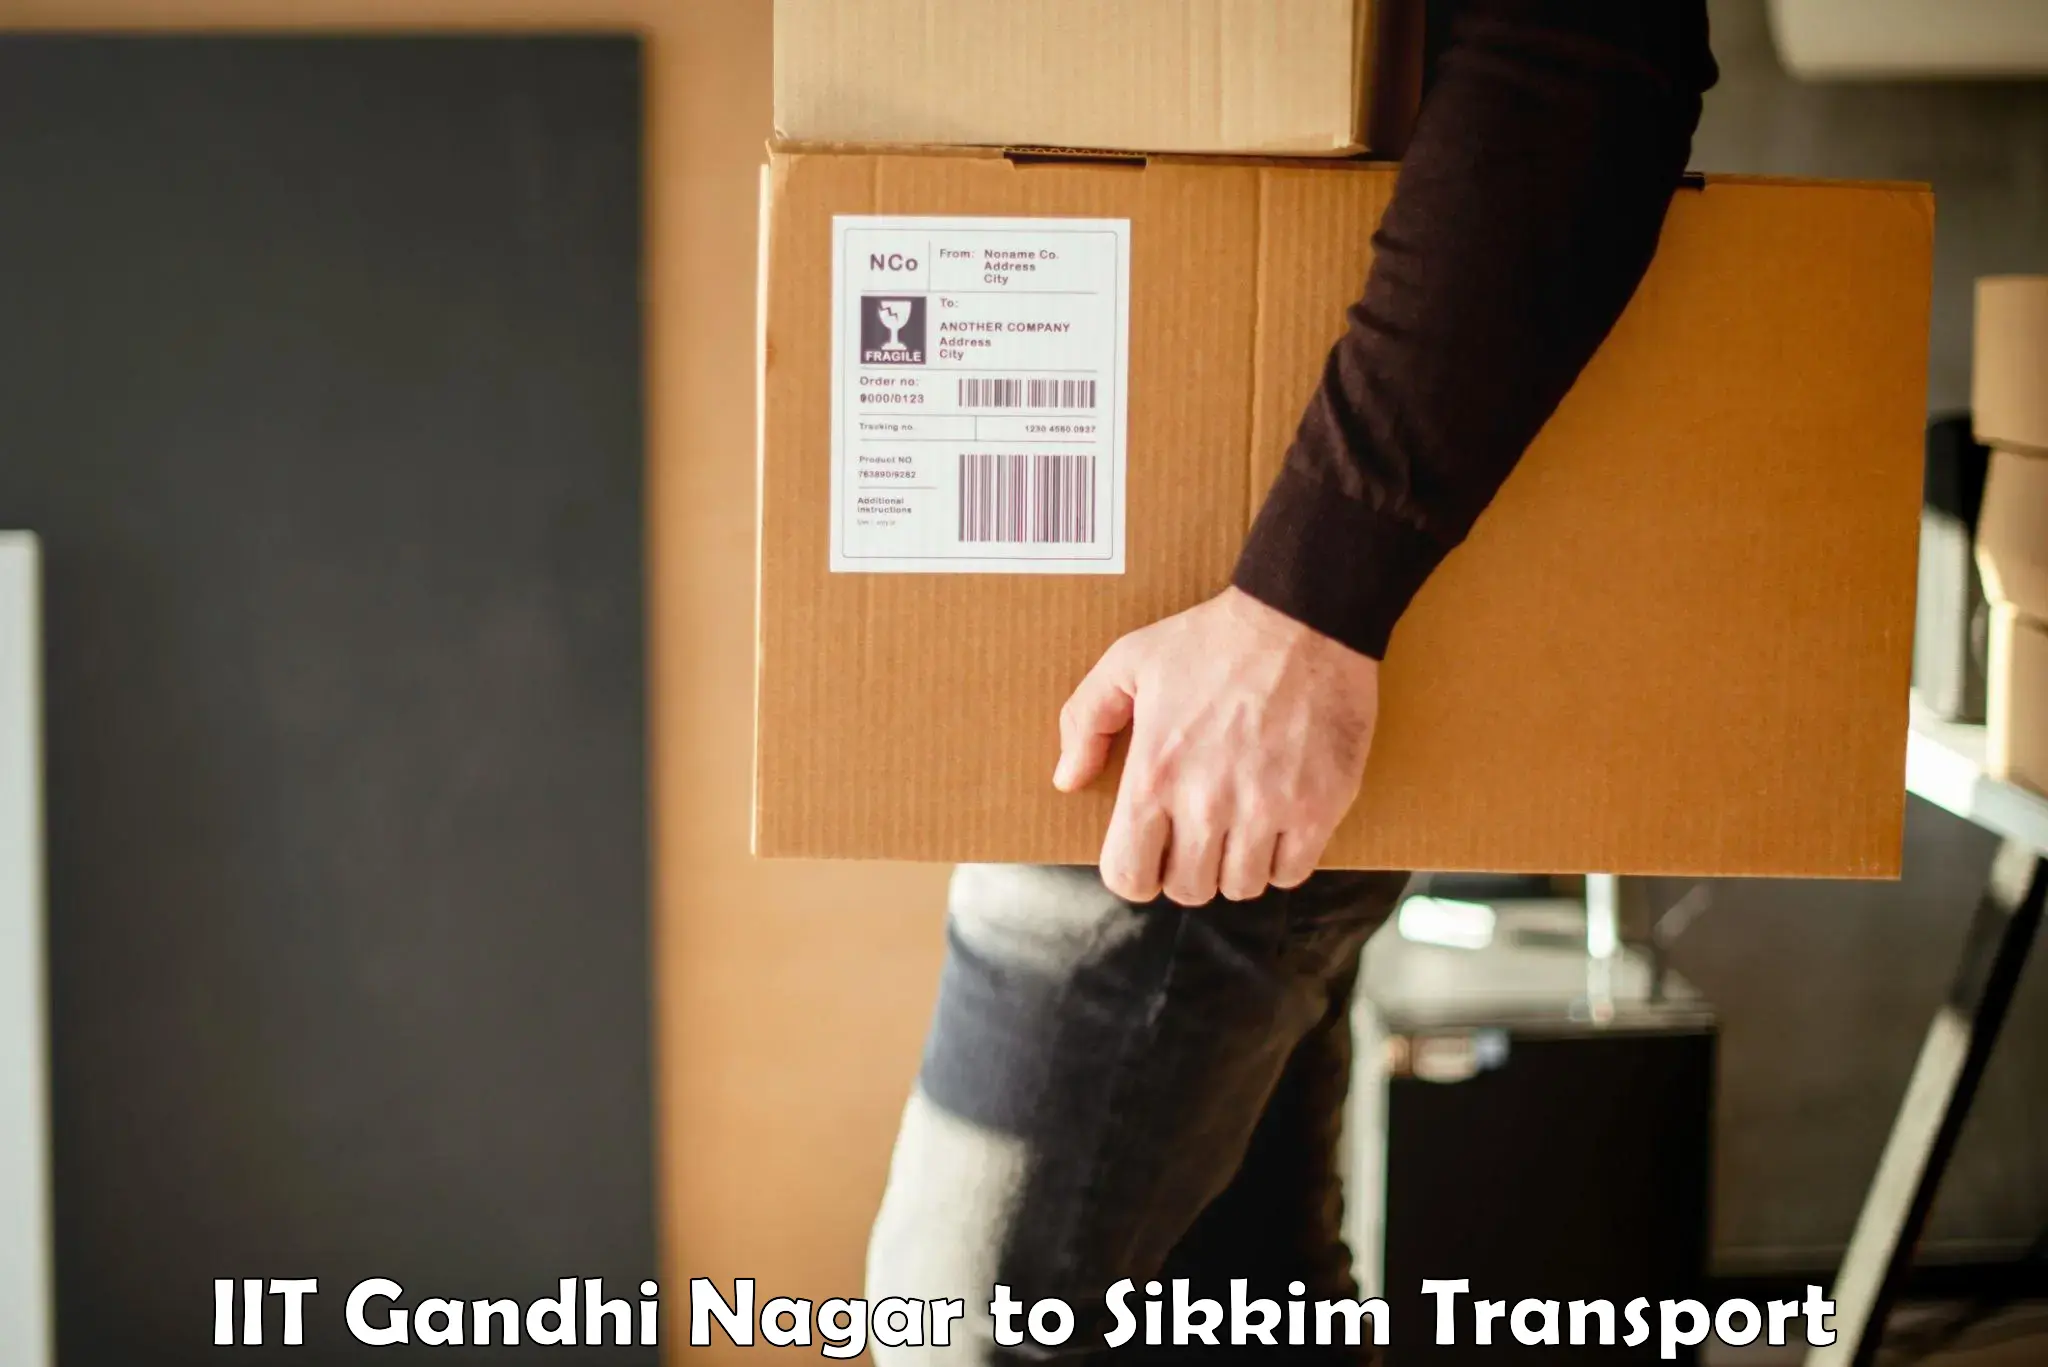 Truck transport companies in India IIT Gandhi Nagar to East Sikkim